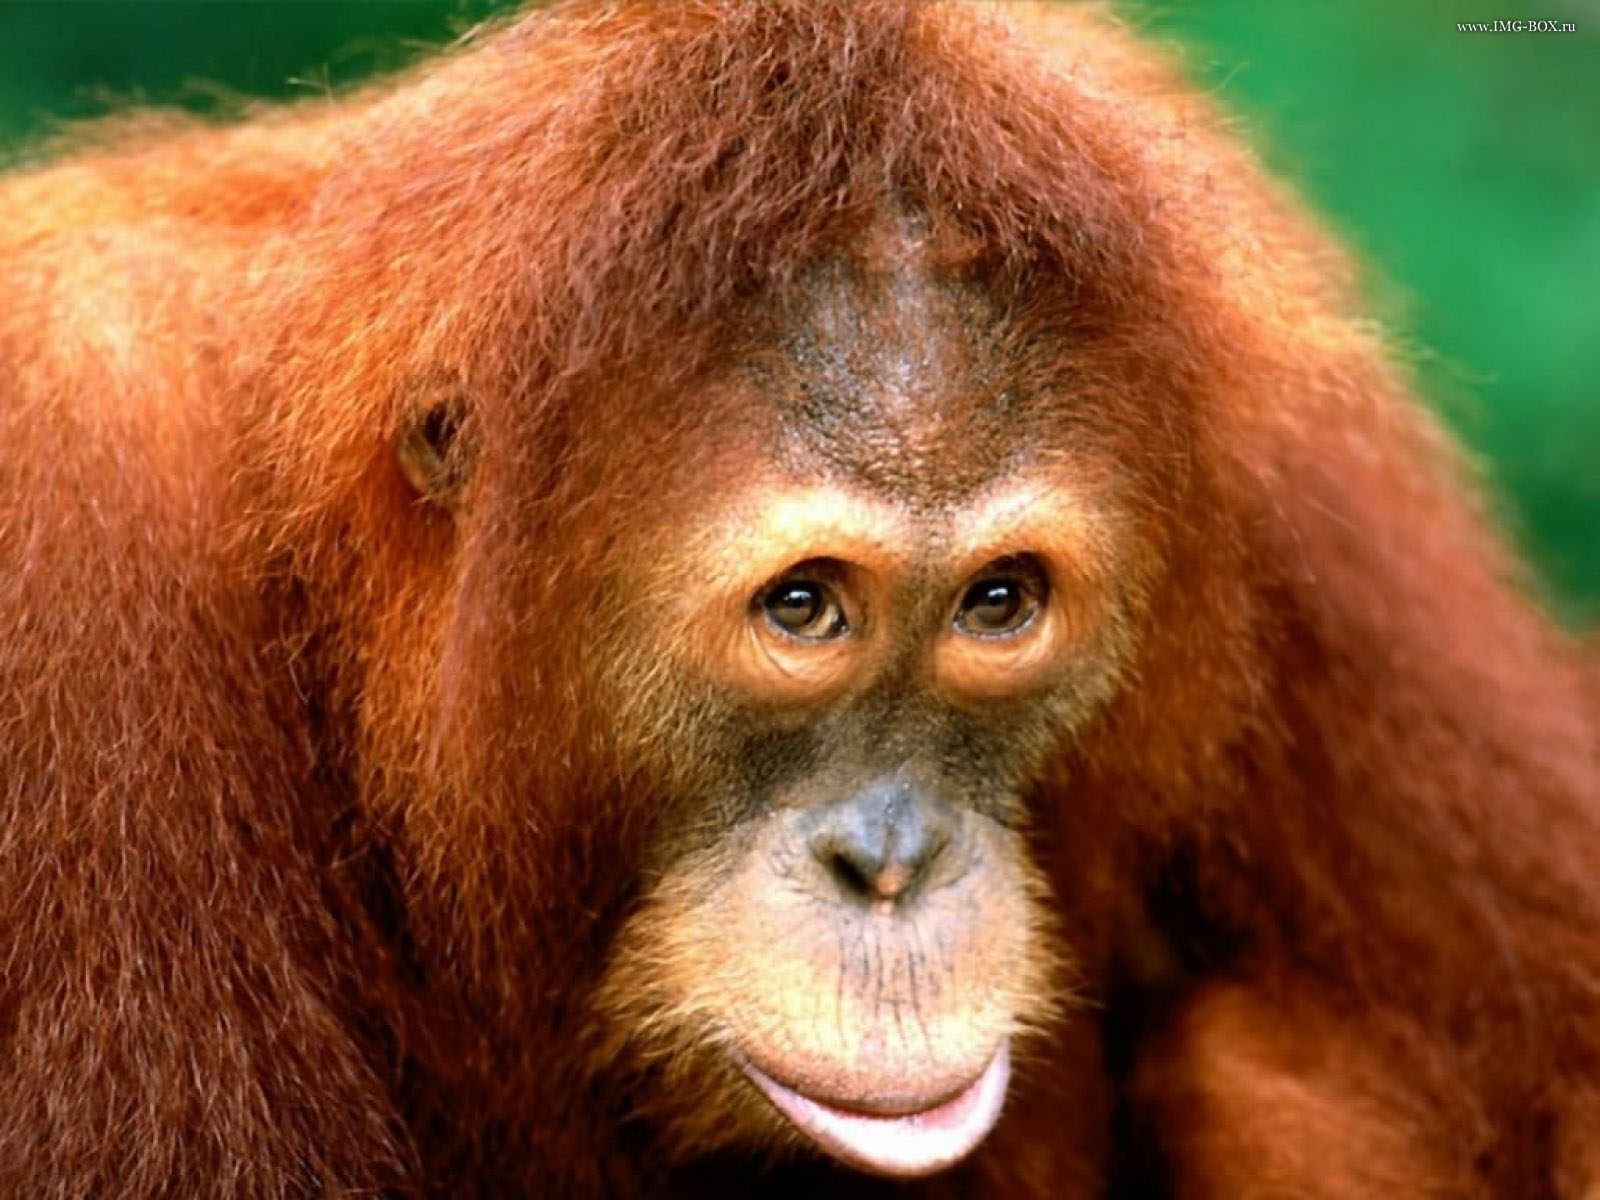 Аргентинский суд признал, что орангутанг, проживающий 20 лет в городском зоопарке, незаконно лишен свободы. ВИДЕО